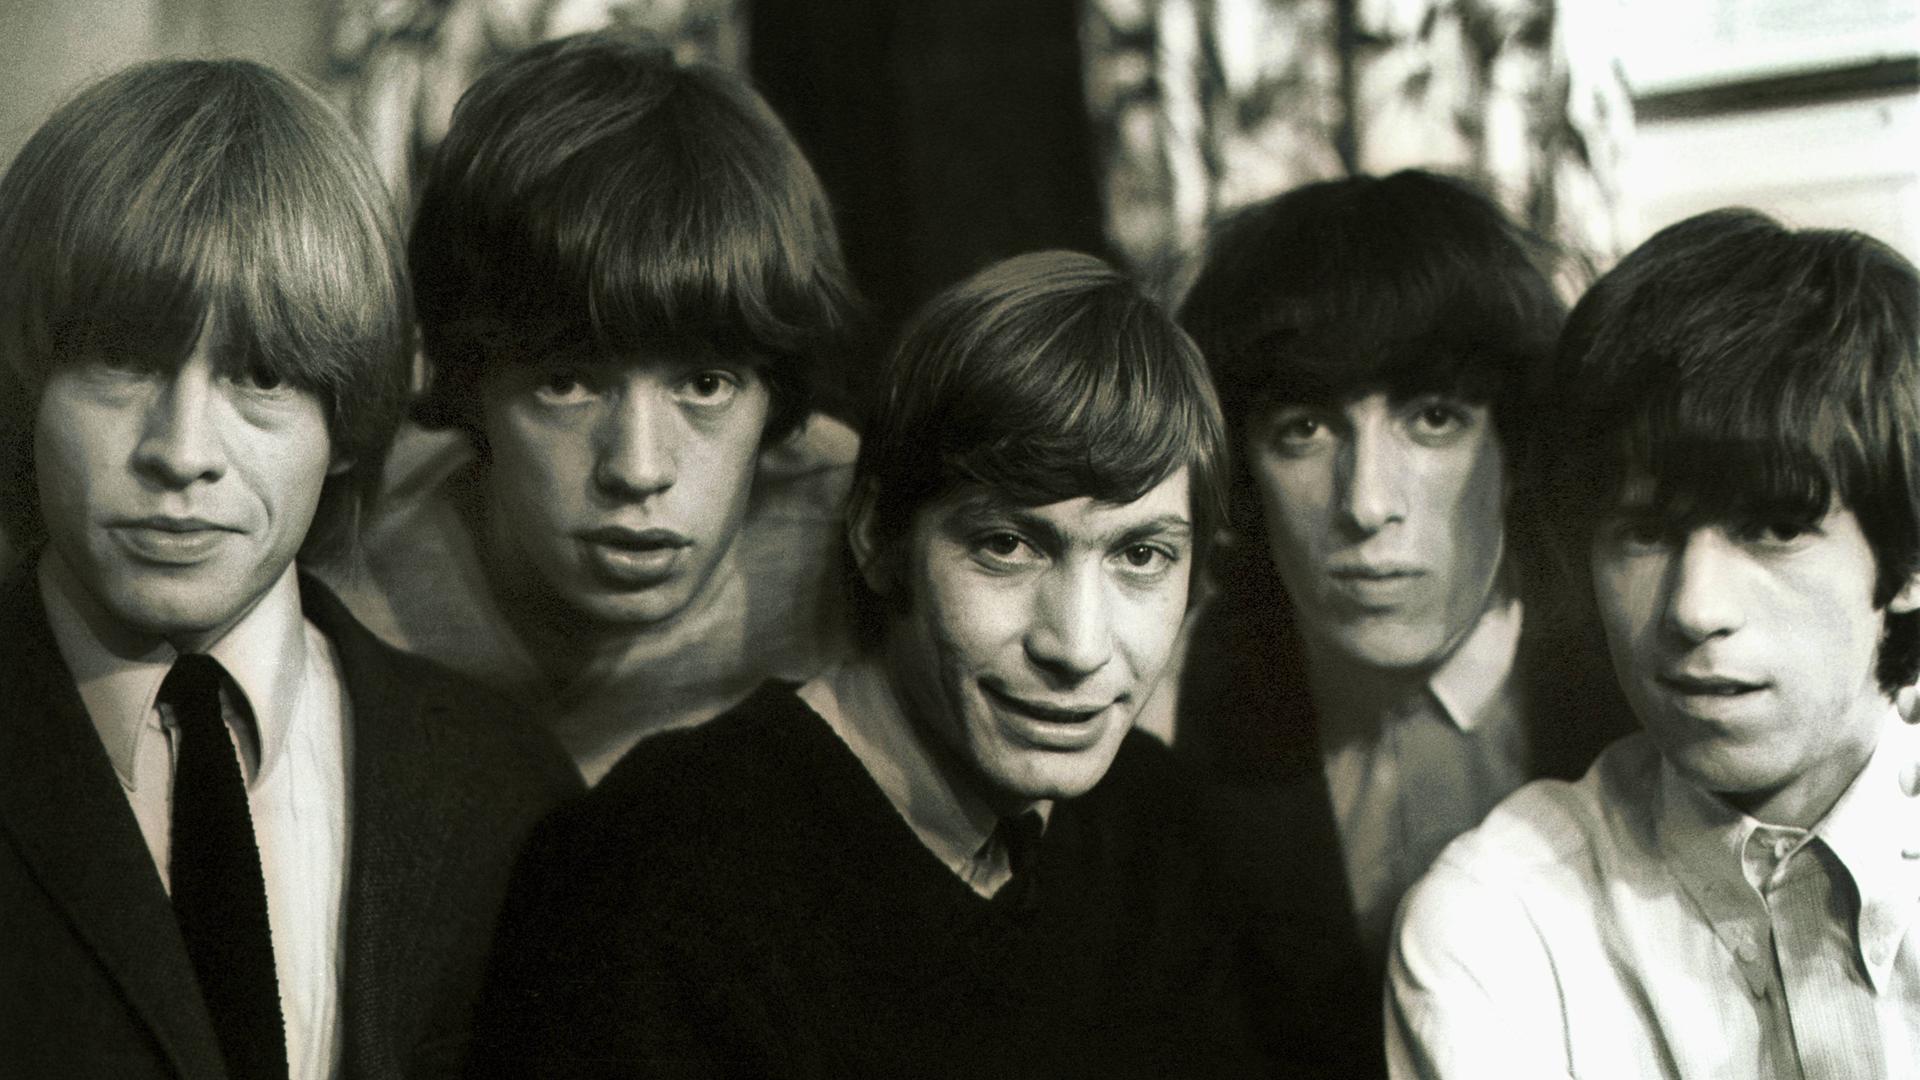 Ein schwarzweiss Foto zeigt die Band Rolling Stones im Jahr 1969: Brian Jones (1962-69) (v.ln.r), Mick Jagger, Charlie Watts (seit 1963) , Bill Wyman (1962-93) und Keith Richards. (v.l.n.r)